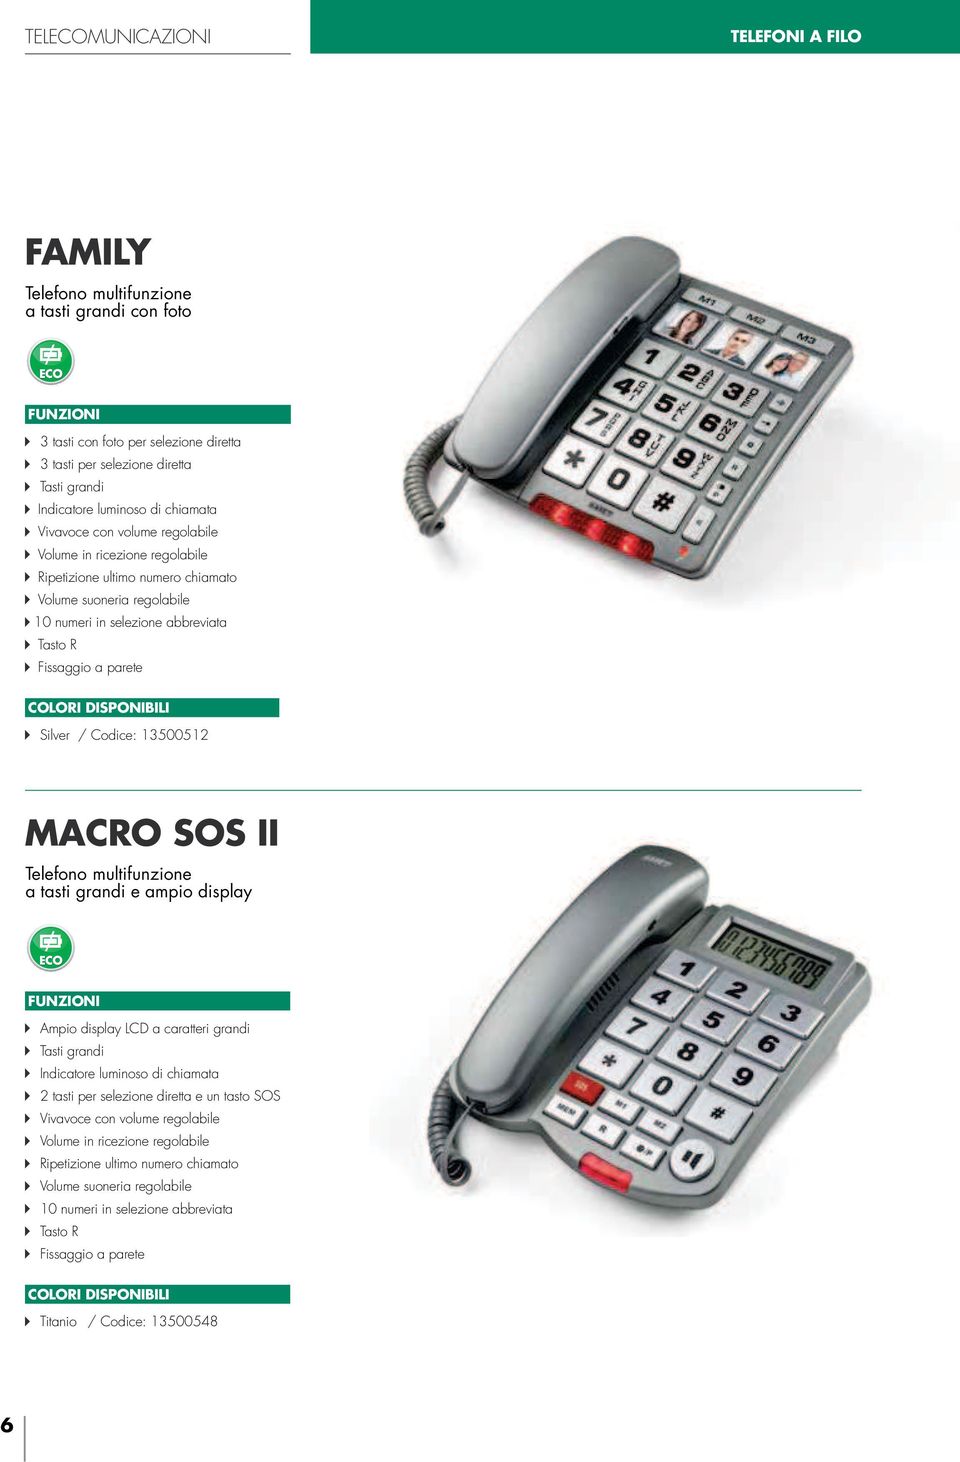 Silver / Codice: 13500512 MACRO SOS II Telefono multifunzione a tasti grandi e ampio display Ampio display LCD a caratteri grandi Tasti grandi Indicatore luminoso di chiamata 2 tasti per selezione